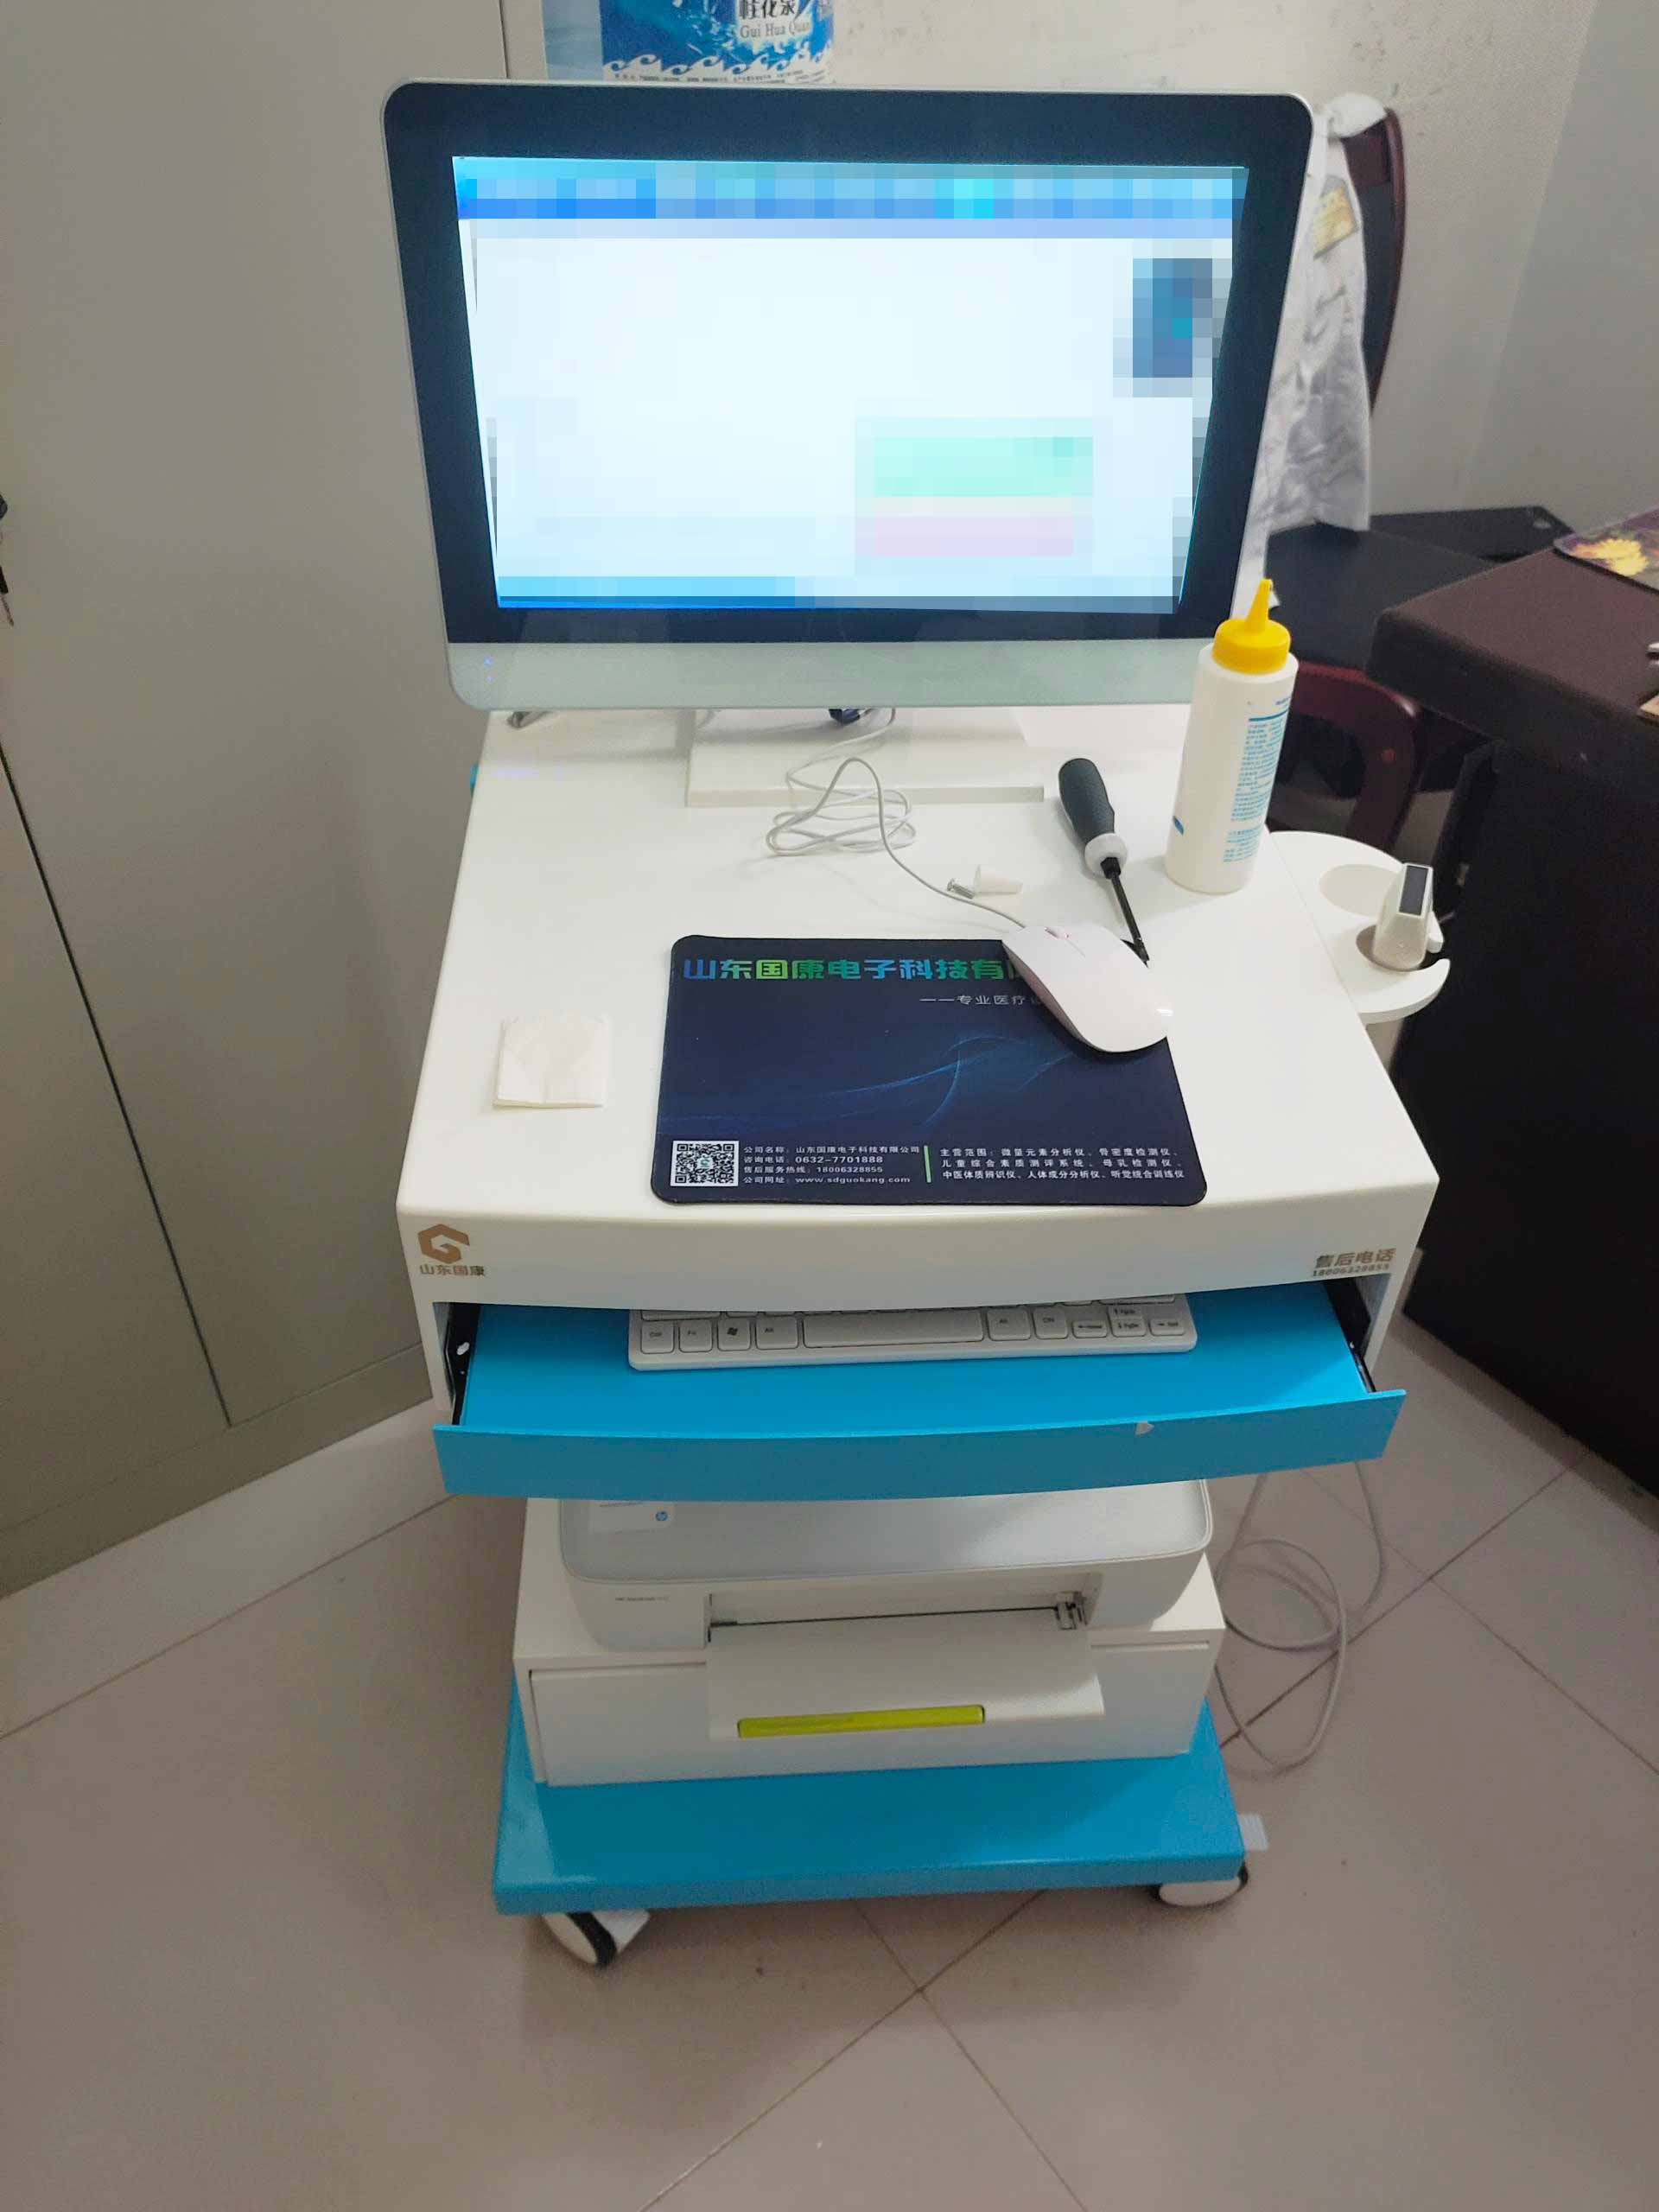 砚山县盘龙卫生院引进GK-8000型号超声骨密度仪